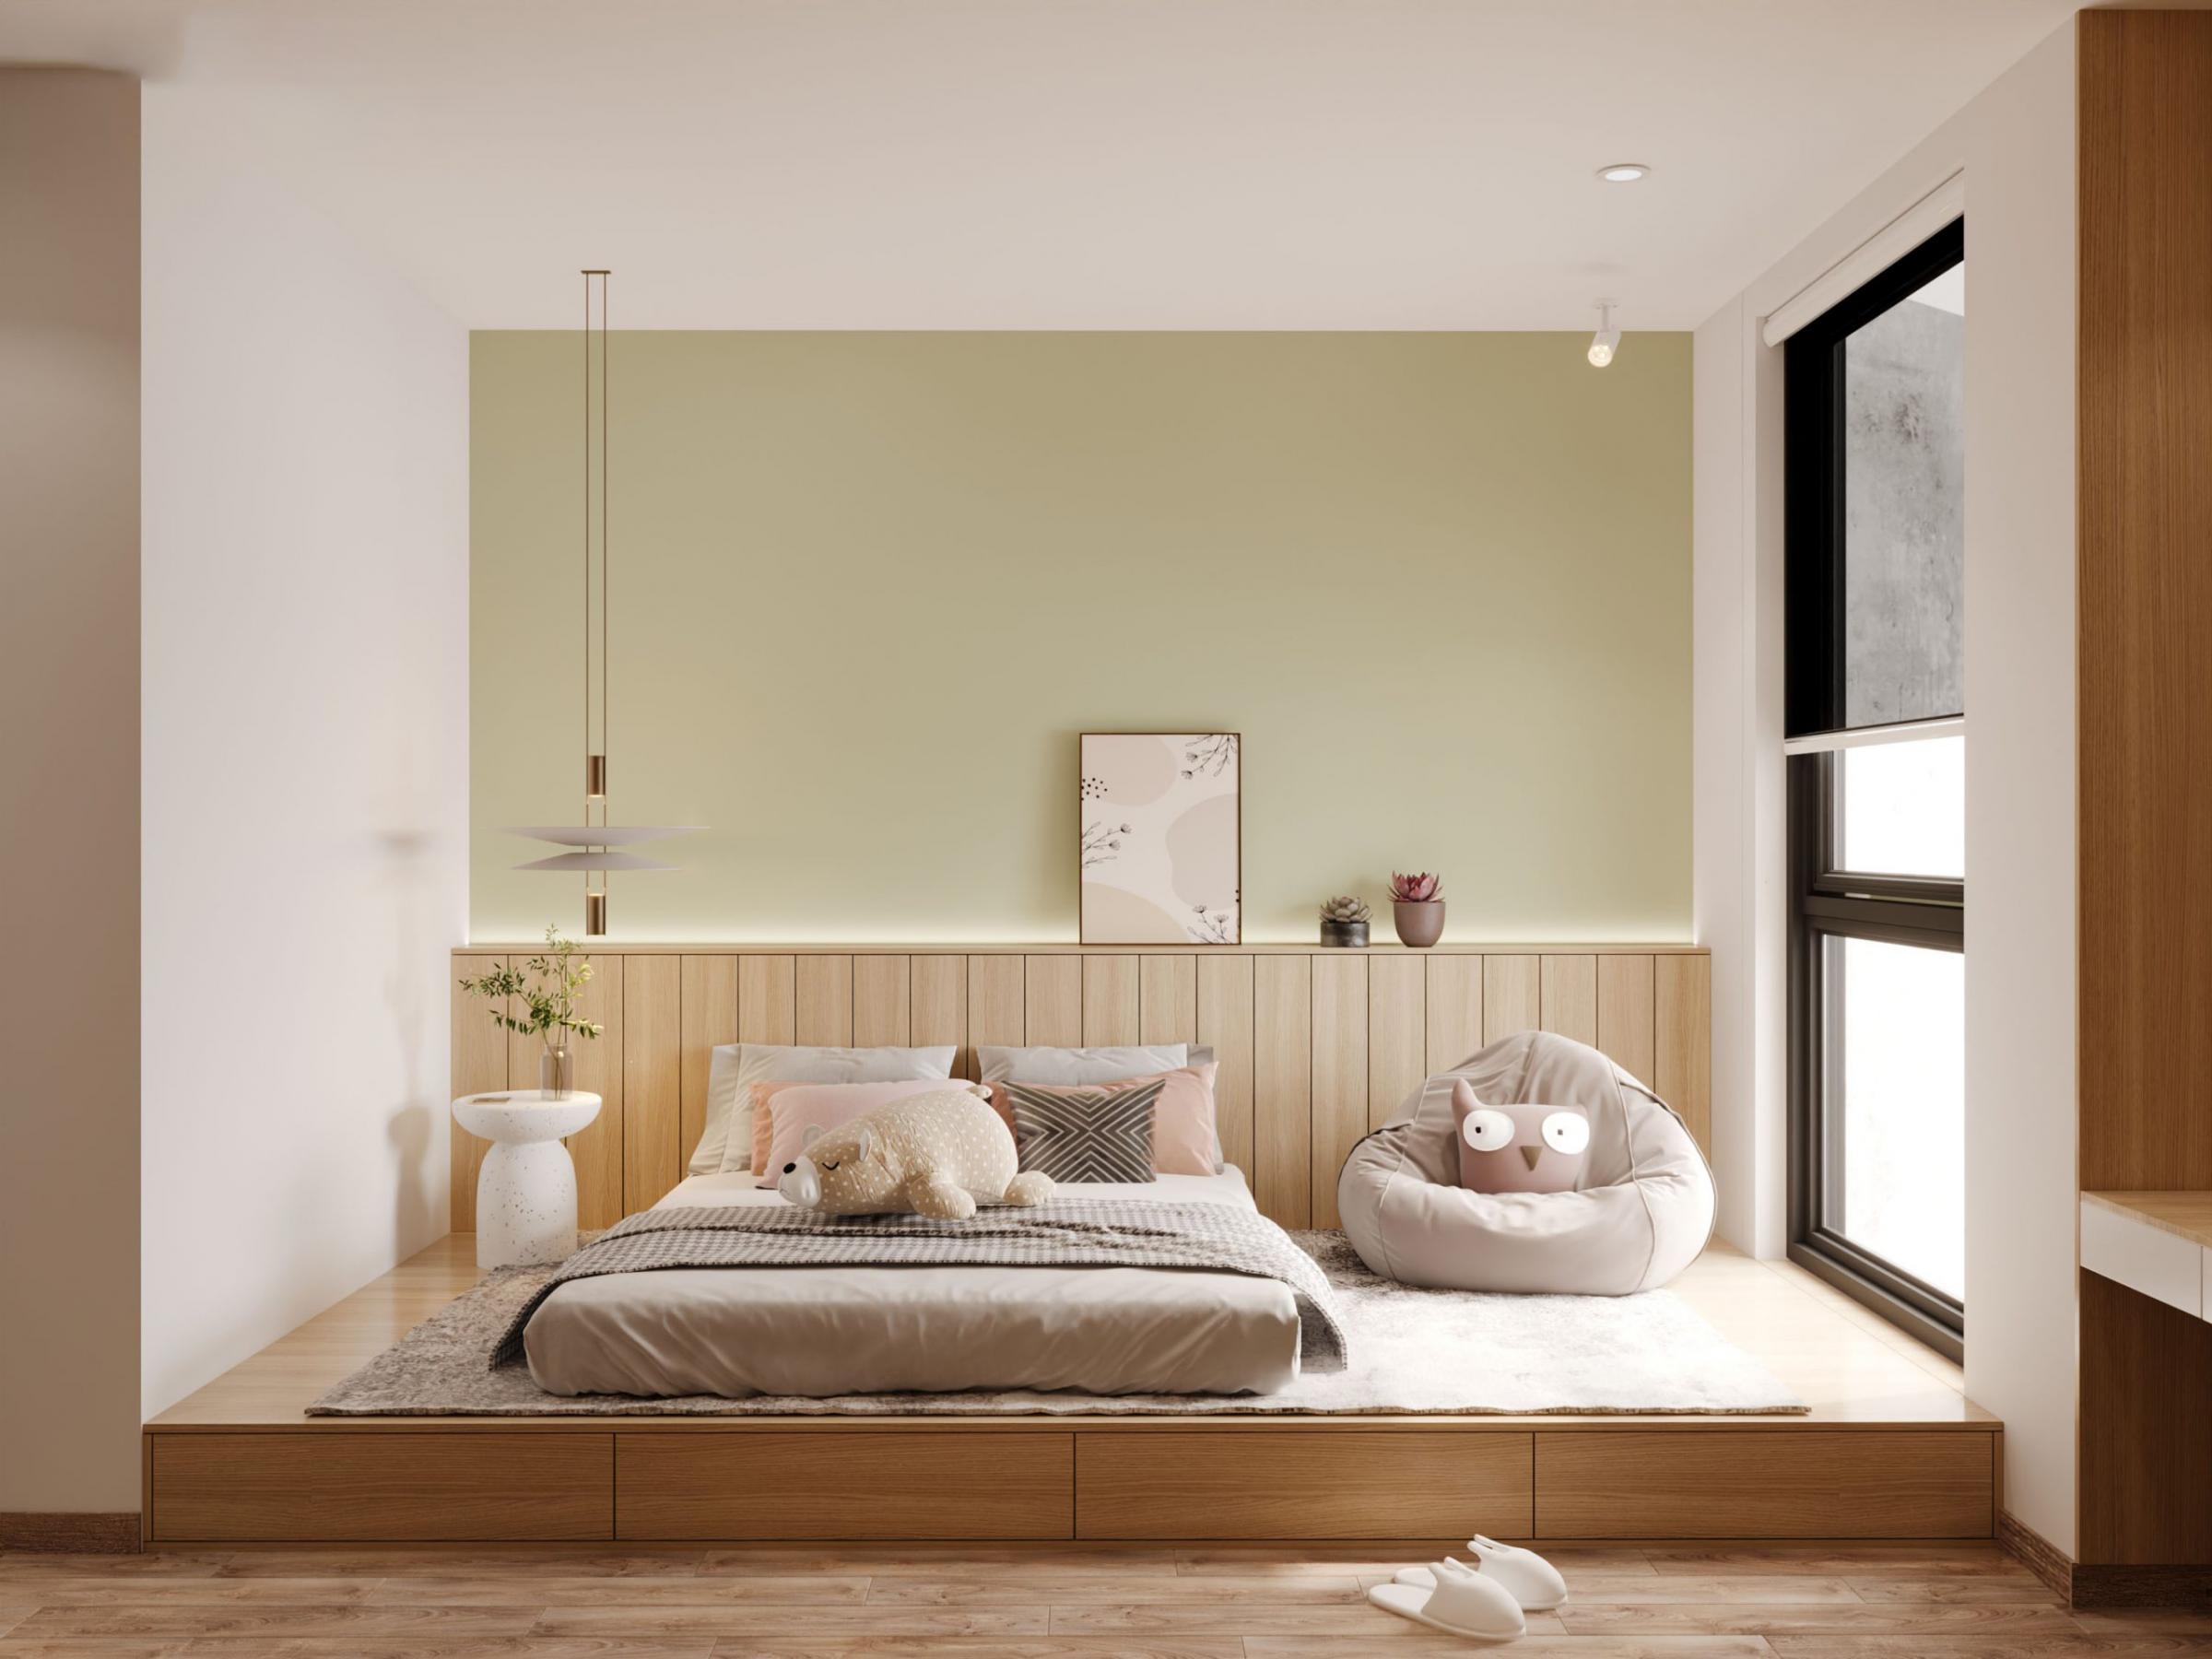 Tìm hiểu cách chọn màu sơn tường phù hợp với phong thủy và nhu cầu của phòng ngủ